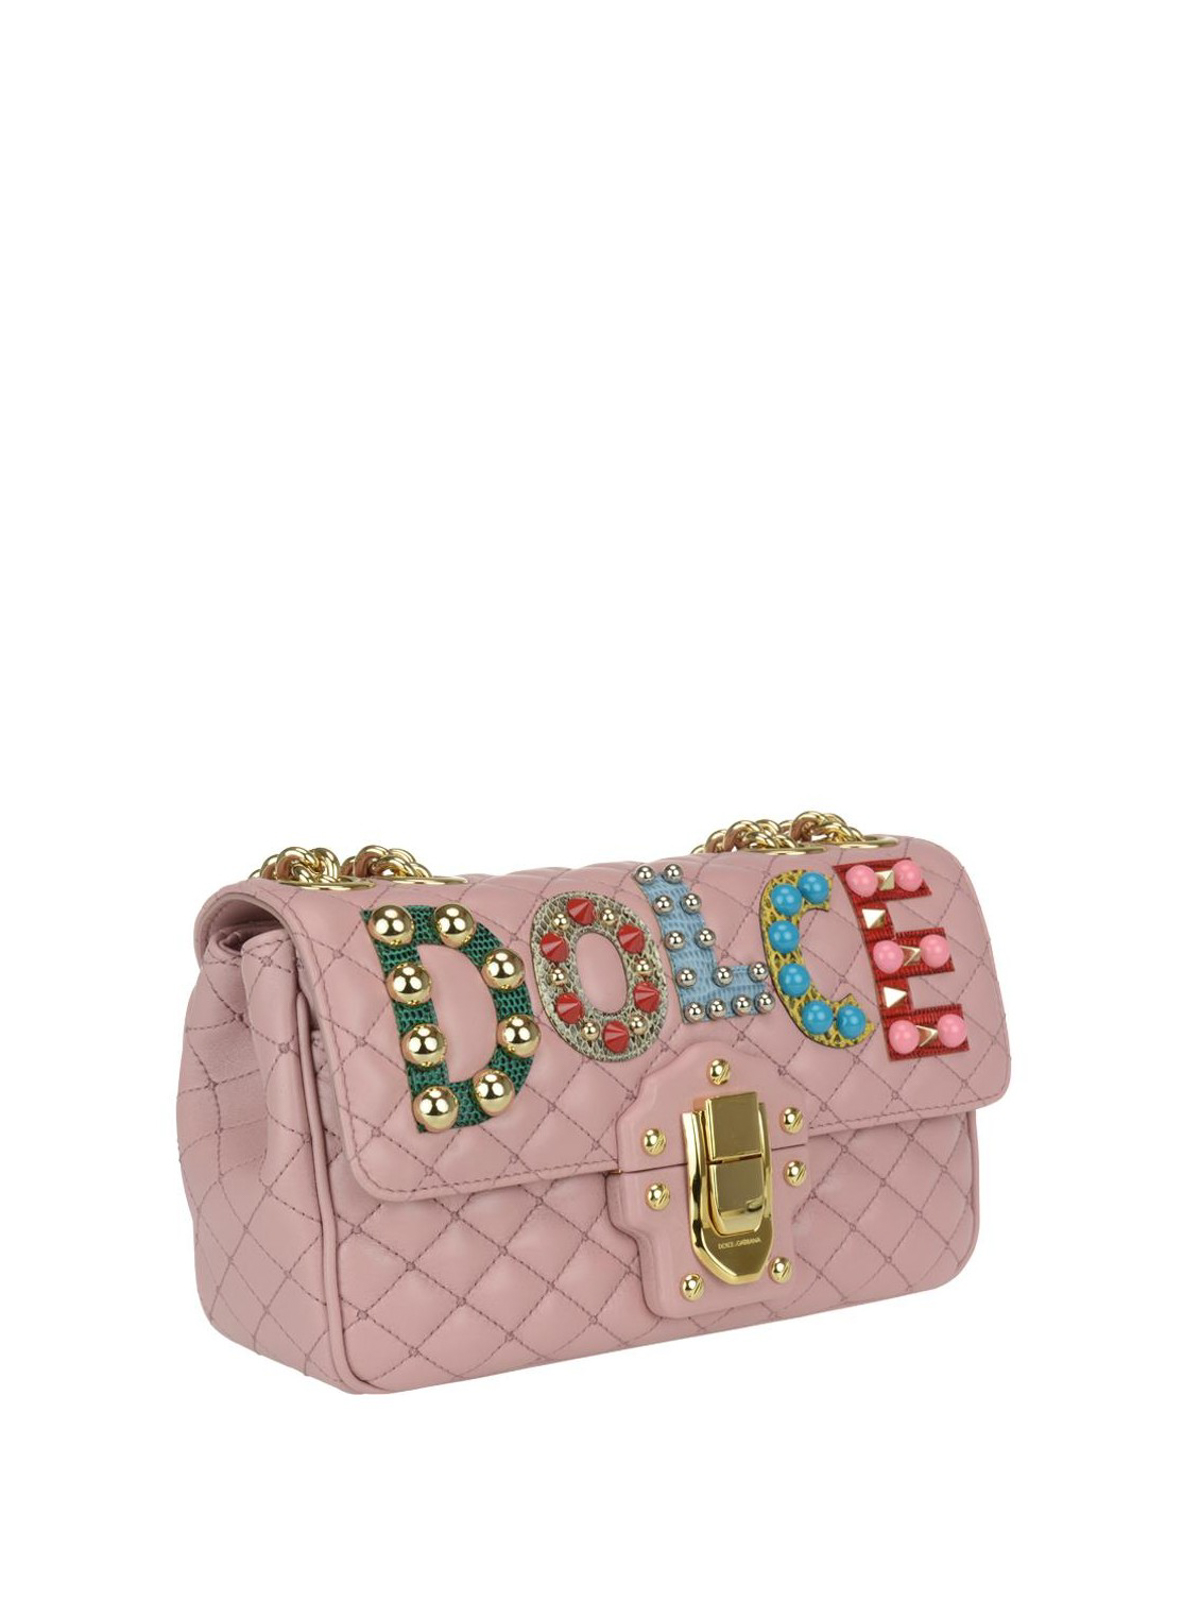 Dolce Gabbana Borsa Lucia In Pelle Rosa Decorata Borse A Tracolla 6344ai6478h406